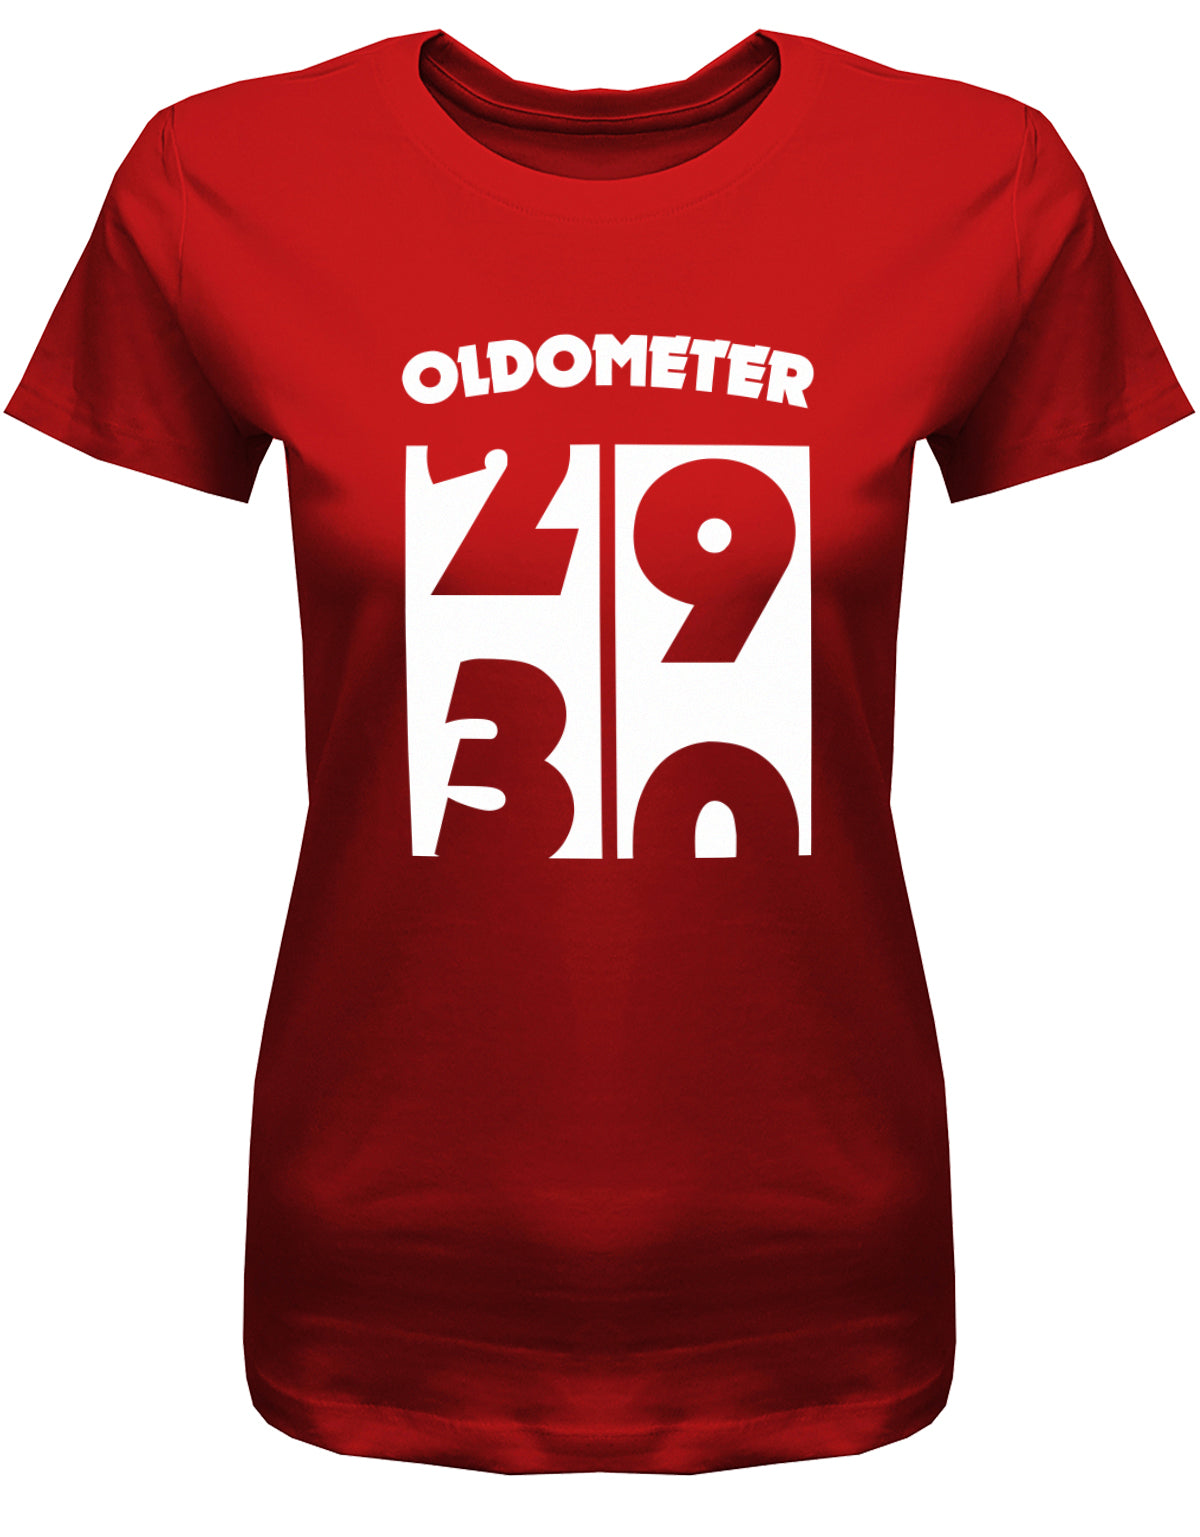 Lustiges T-Shirt zum 30. Geburtstag für die Frau Bedruckt mit Oldometer. Wechsel von 29 auf 30 Jahren. Rot